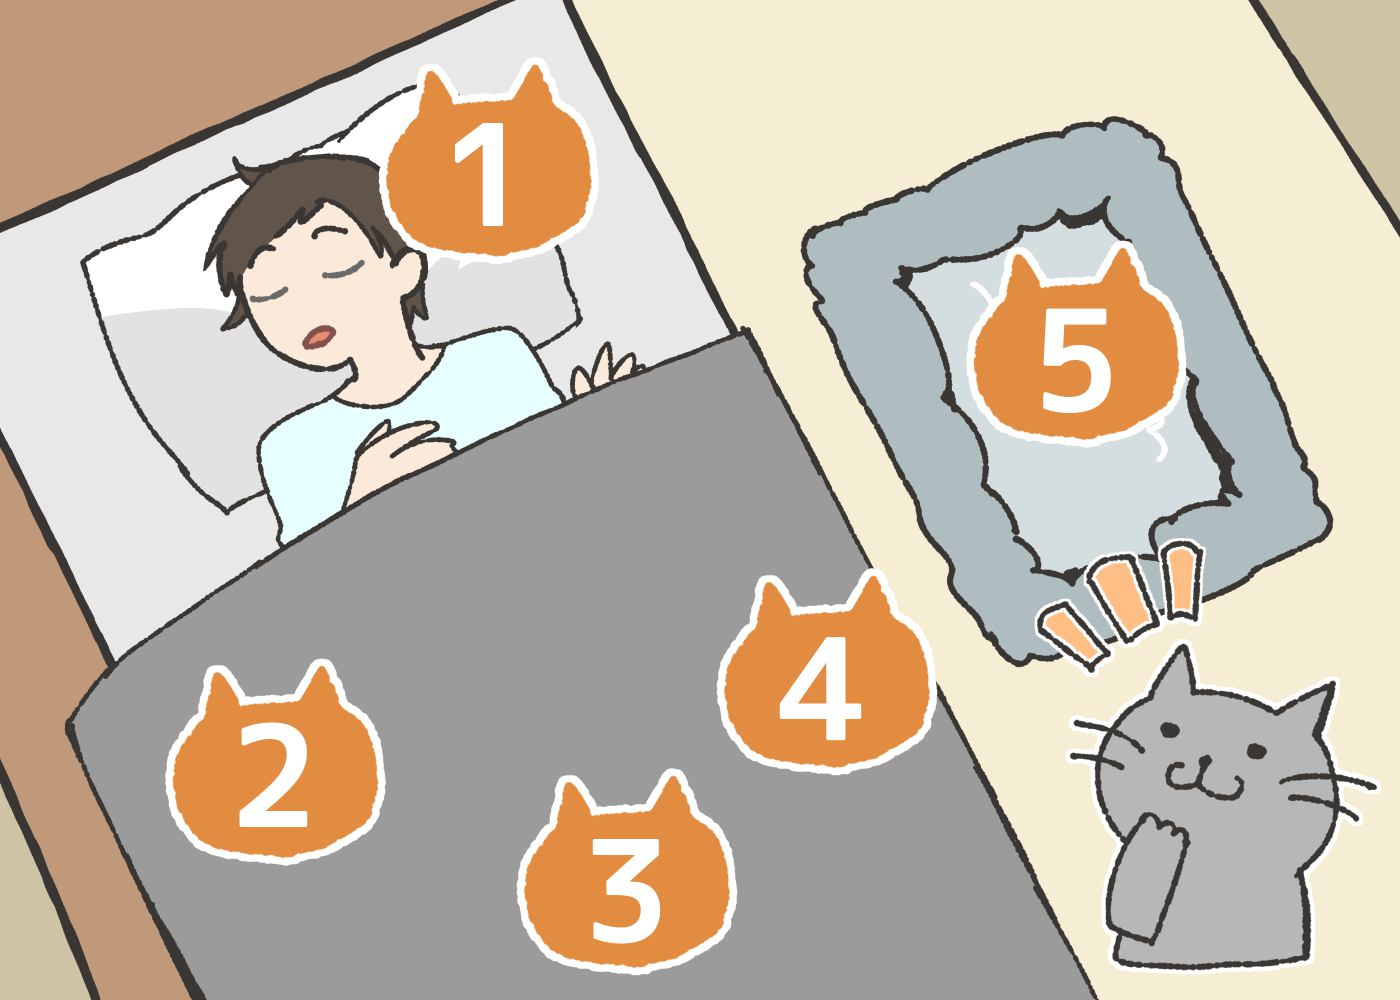 猫が寝る位置で分かる5つの性格と睡眠の仕方